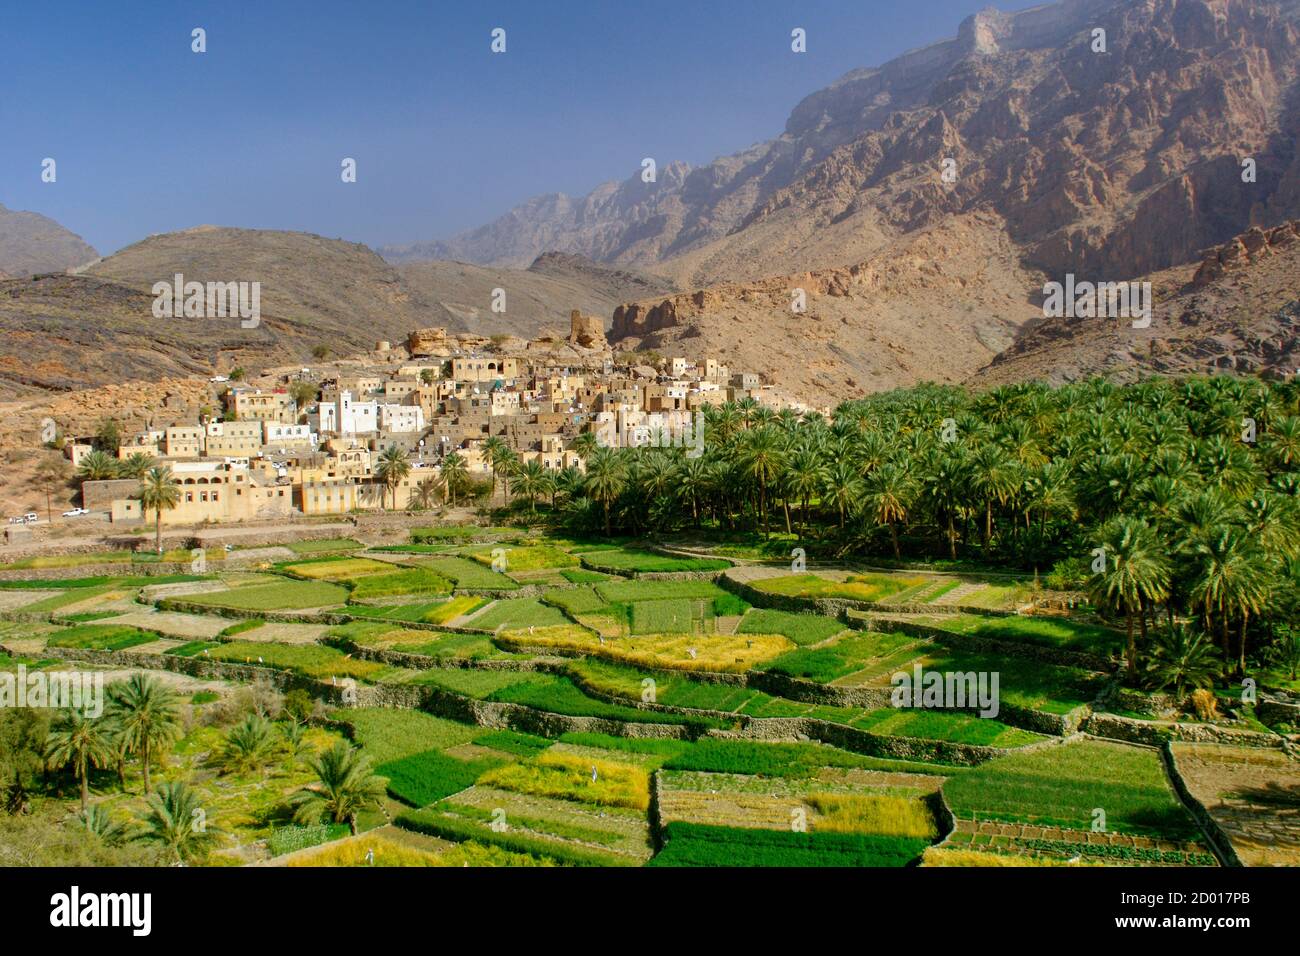 Das Dorf Bilad seT und seine Plantagen in Wadi Bani auf im Jebel Akhdar Gebirge von Oman. Stockfoto